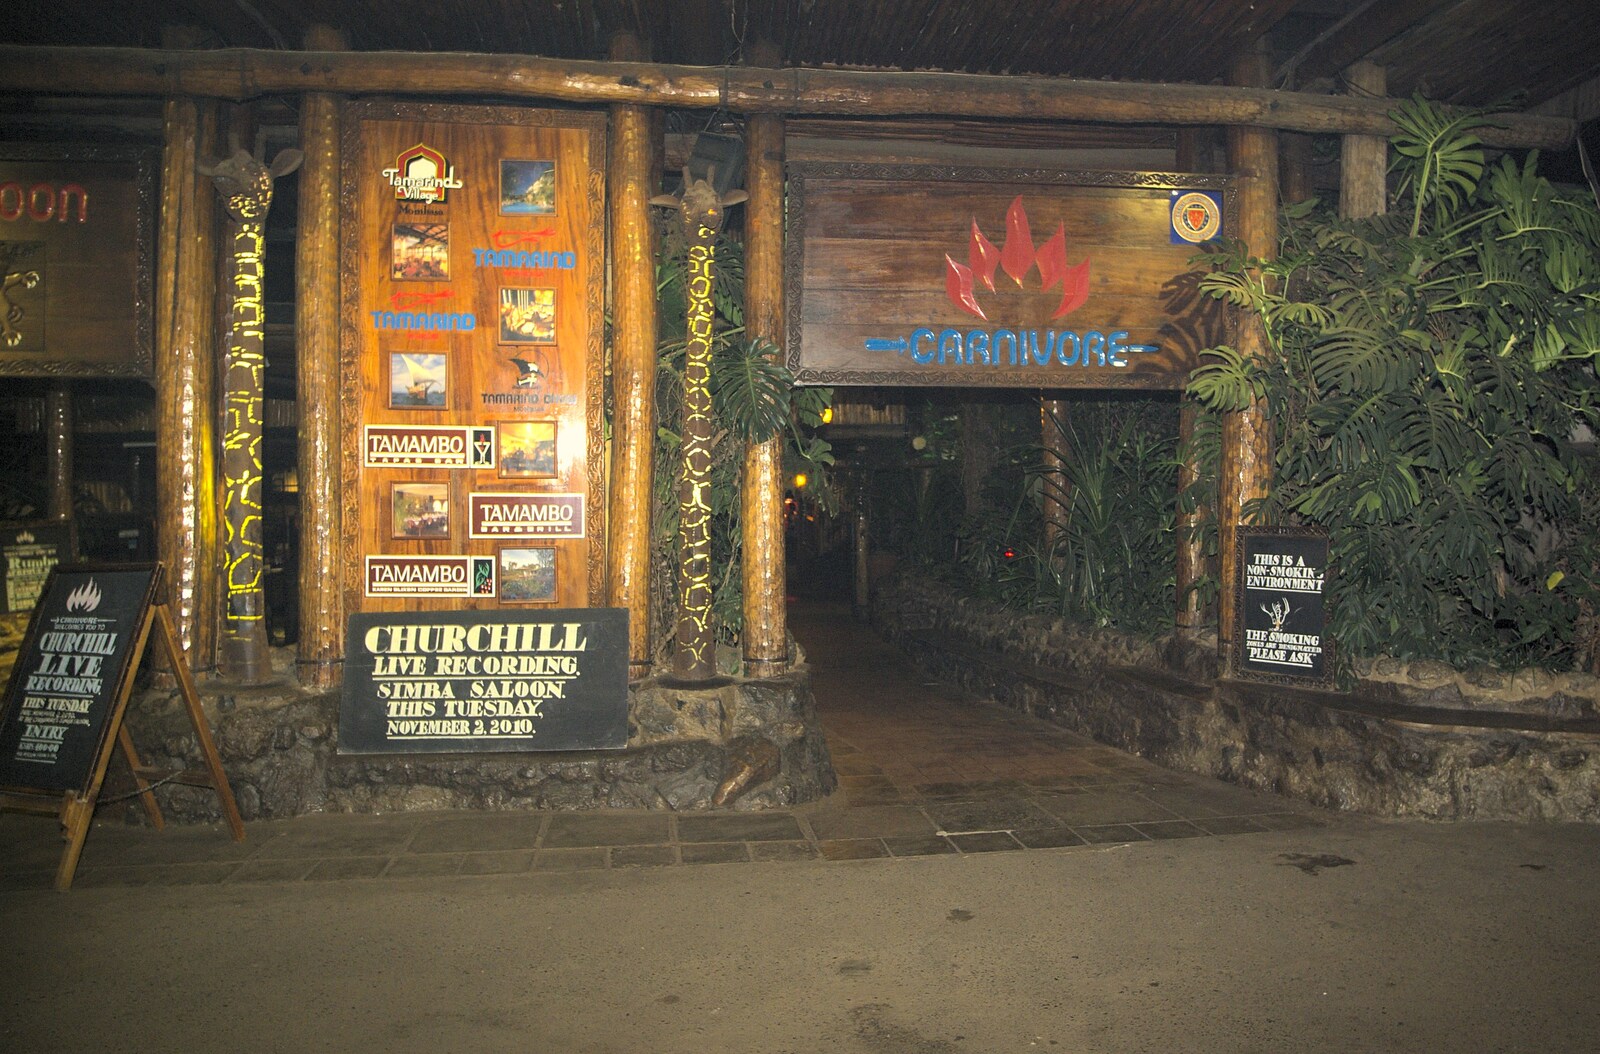 The front of Carnivore restaurant from Nairobi and the Road to Maasai Mara, Kenya, Africa - 1st November 2010